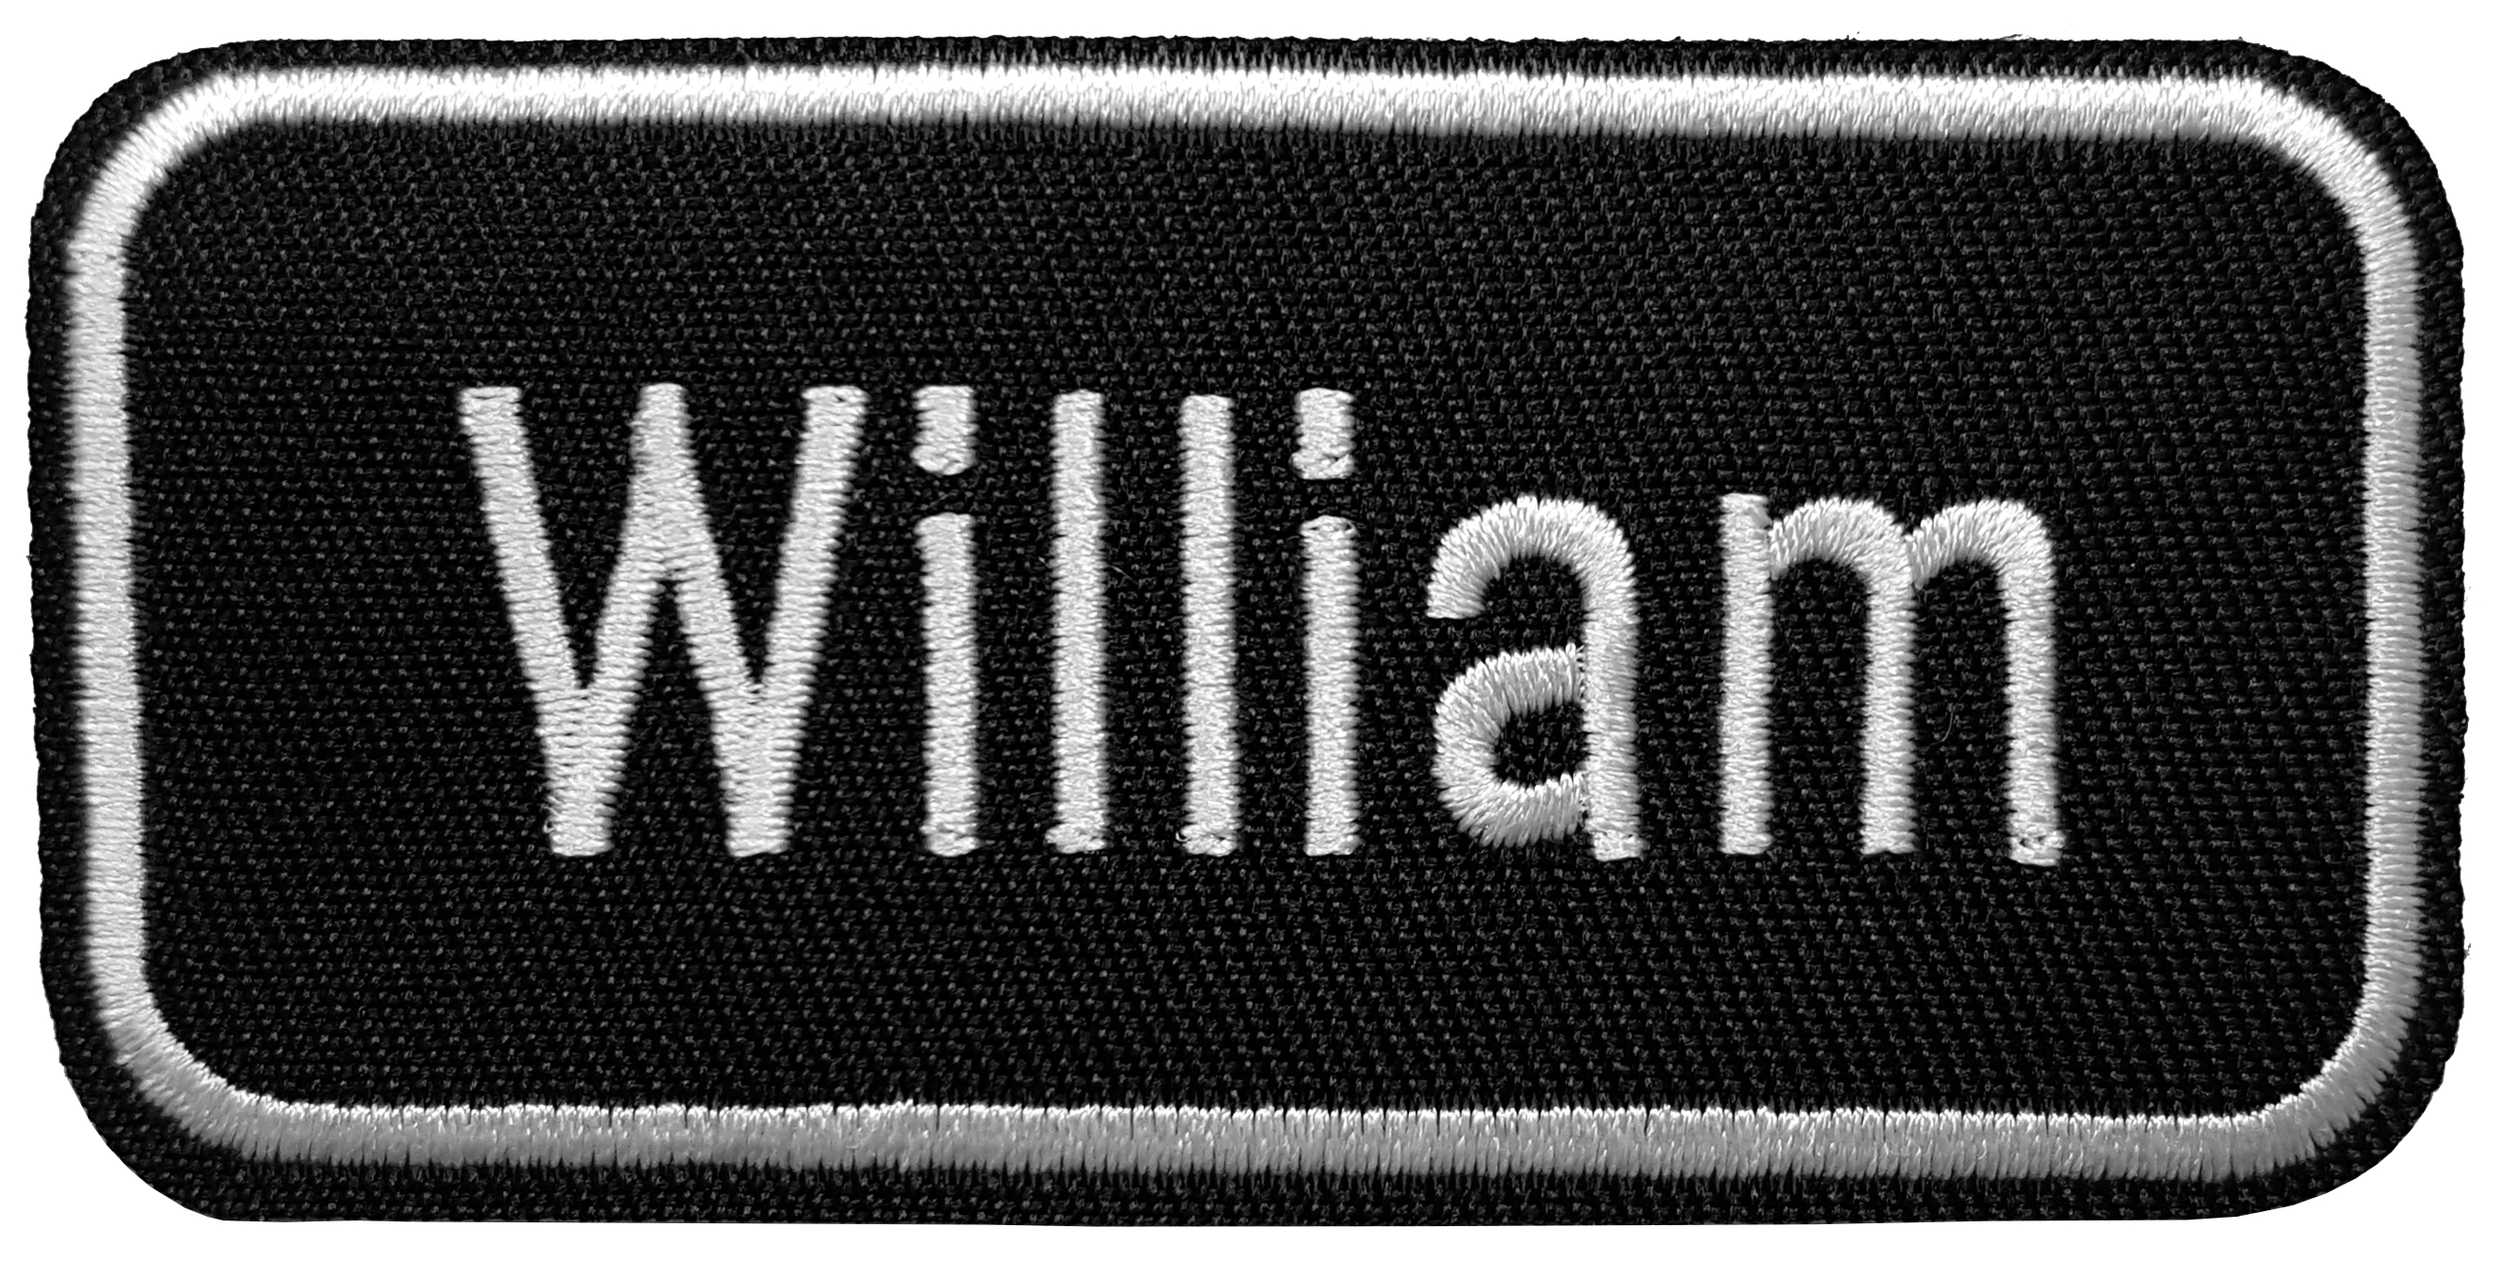 Patch prénom William 1